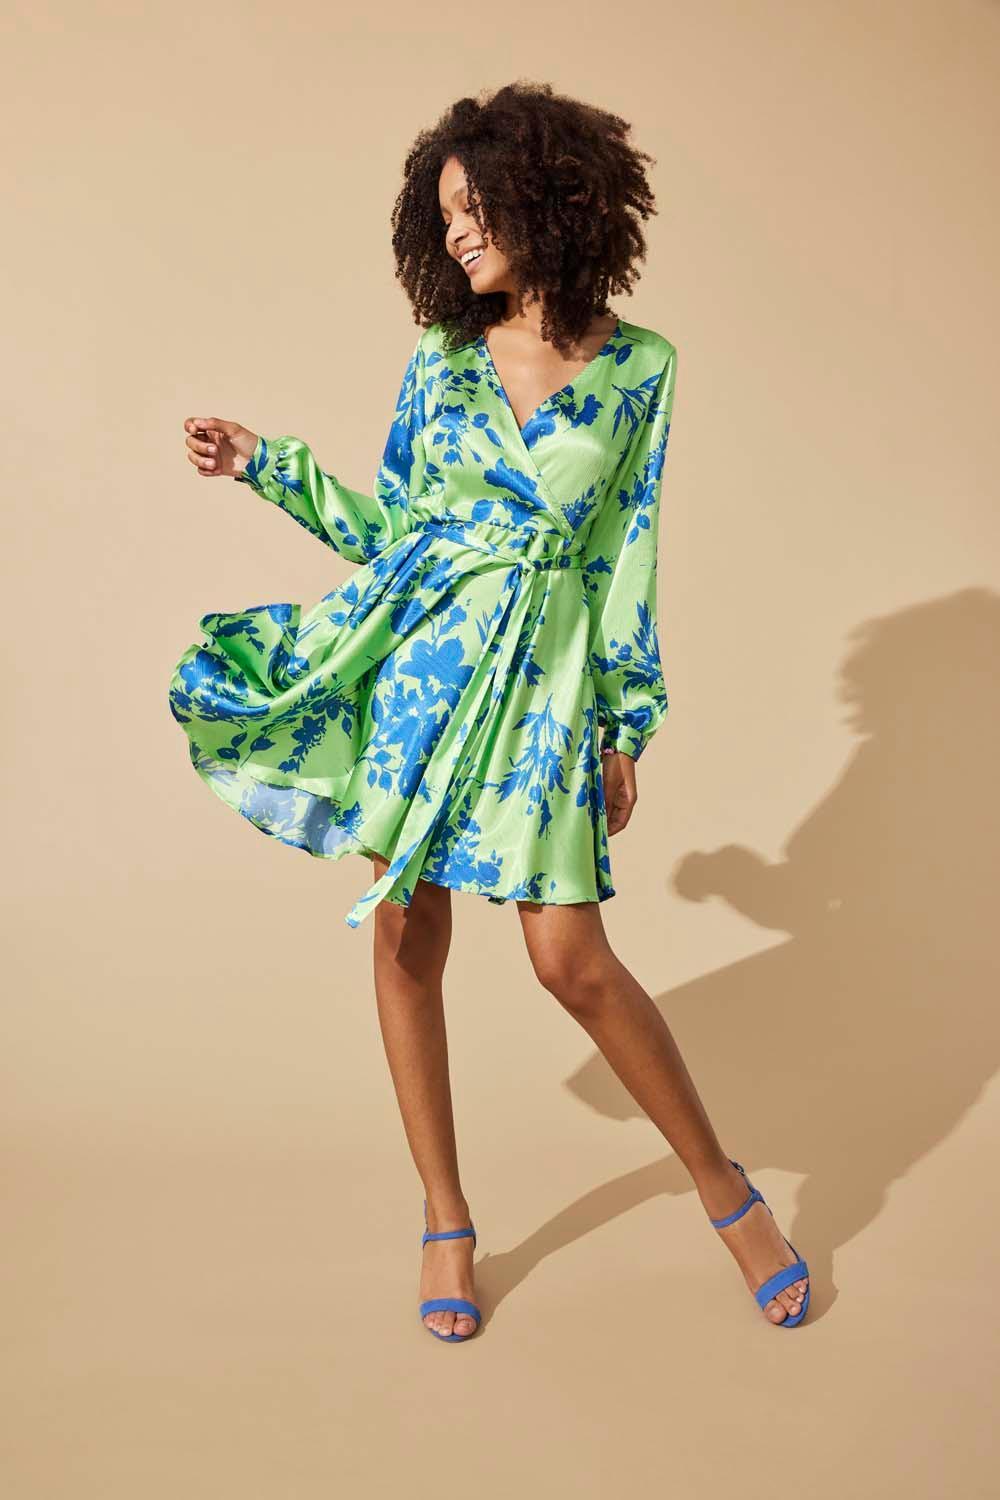 houten Bevriezen aankunnen onlsummer l/s wrap dress ptm 15292716 only jurk summer green/occ botani